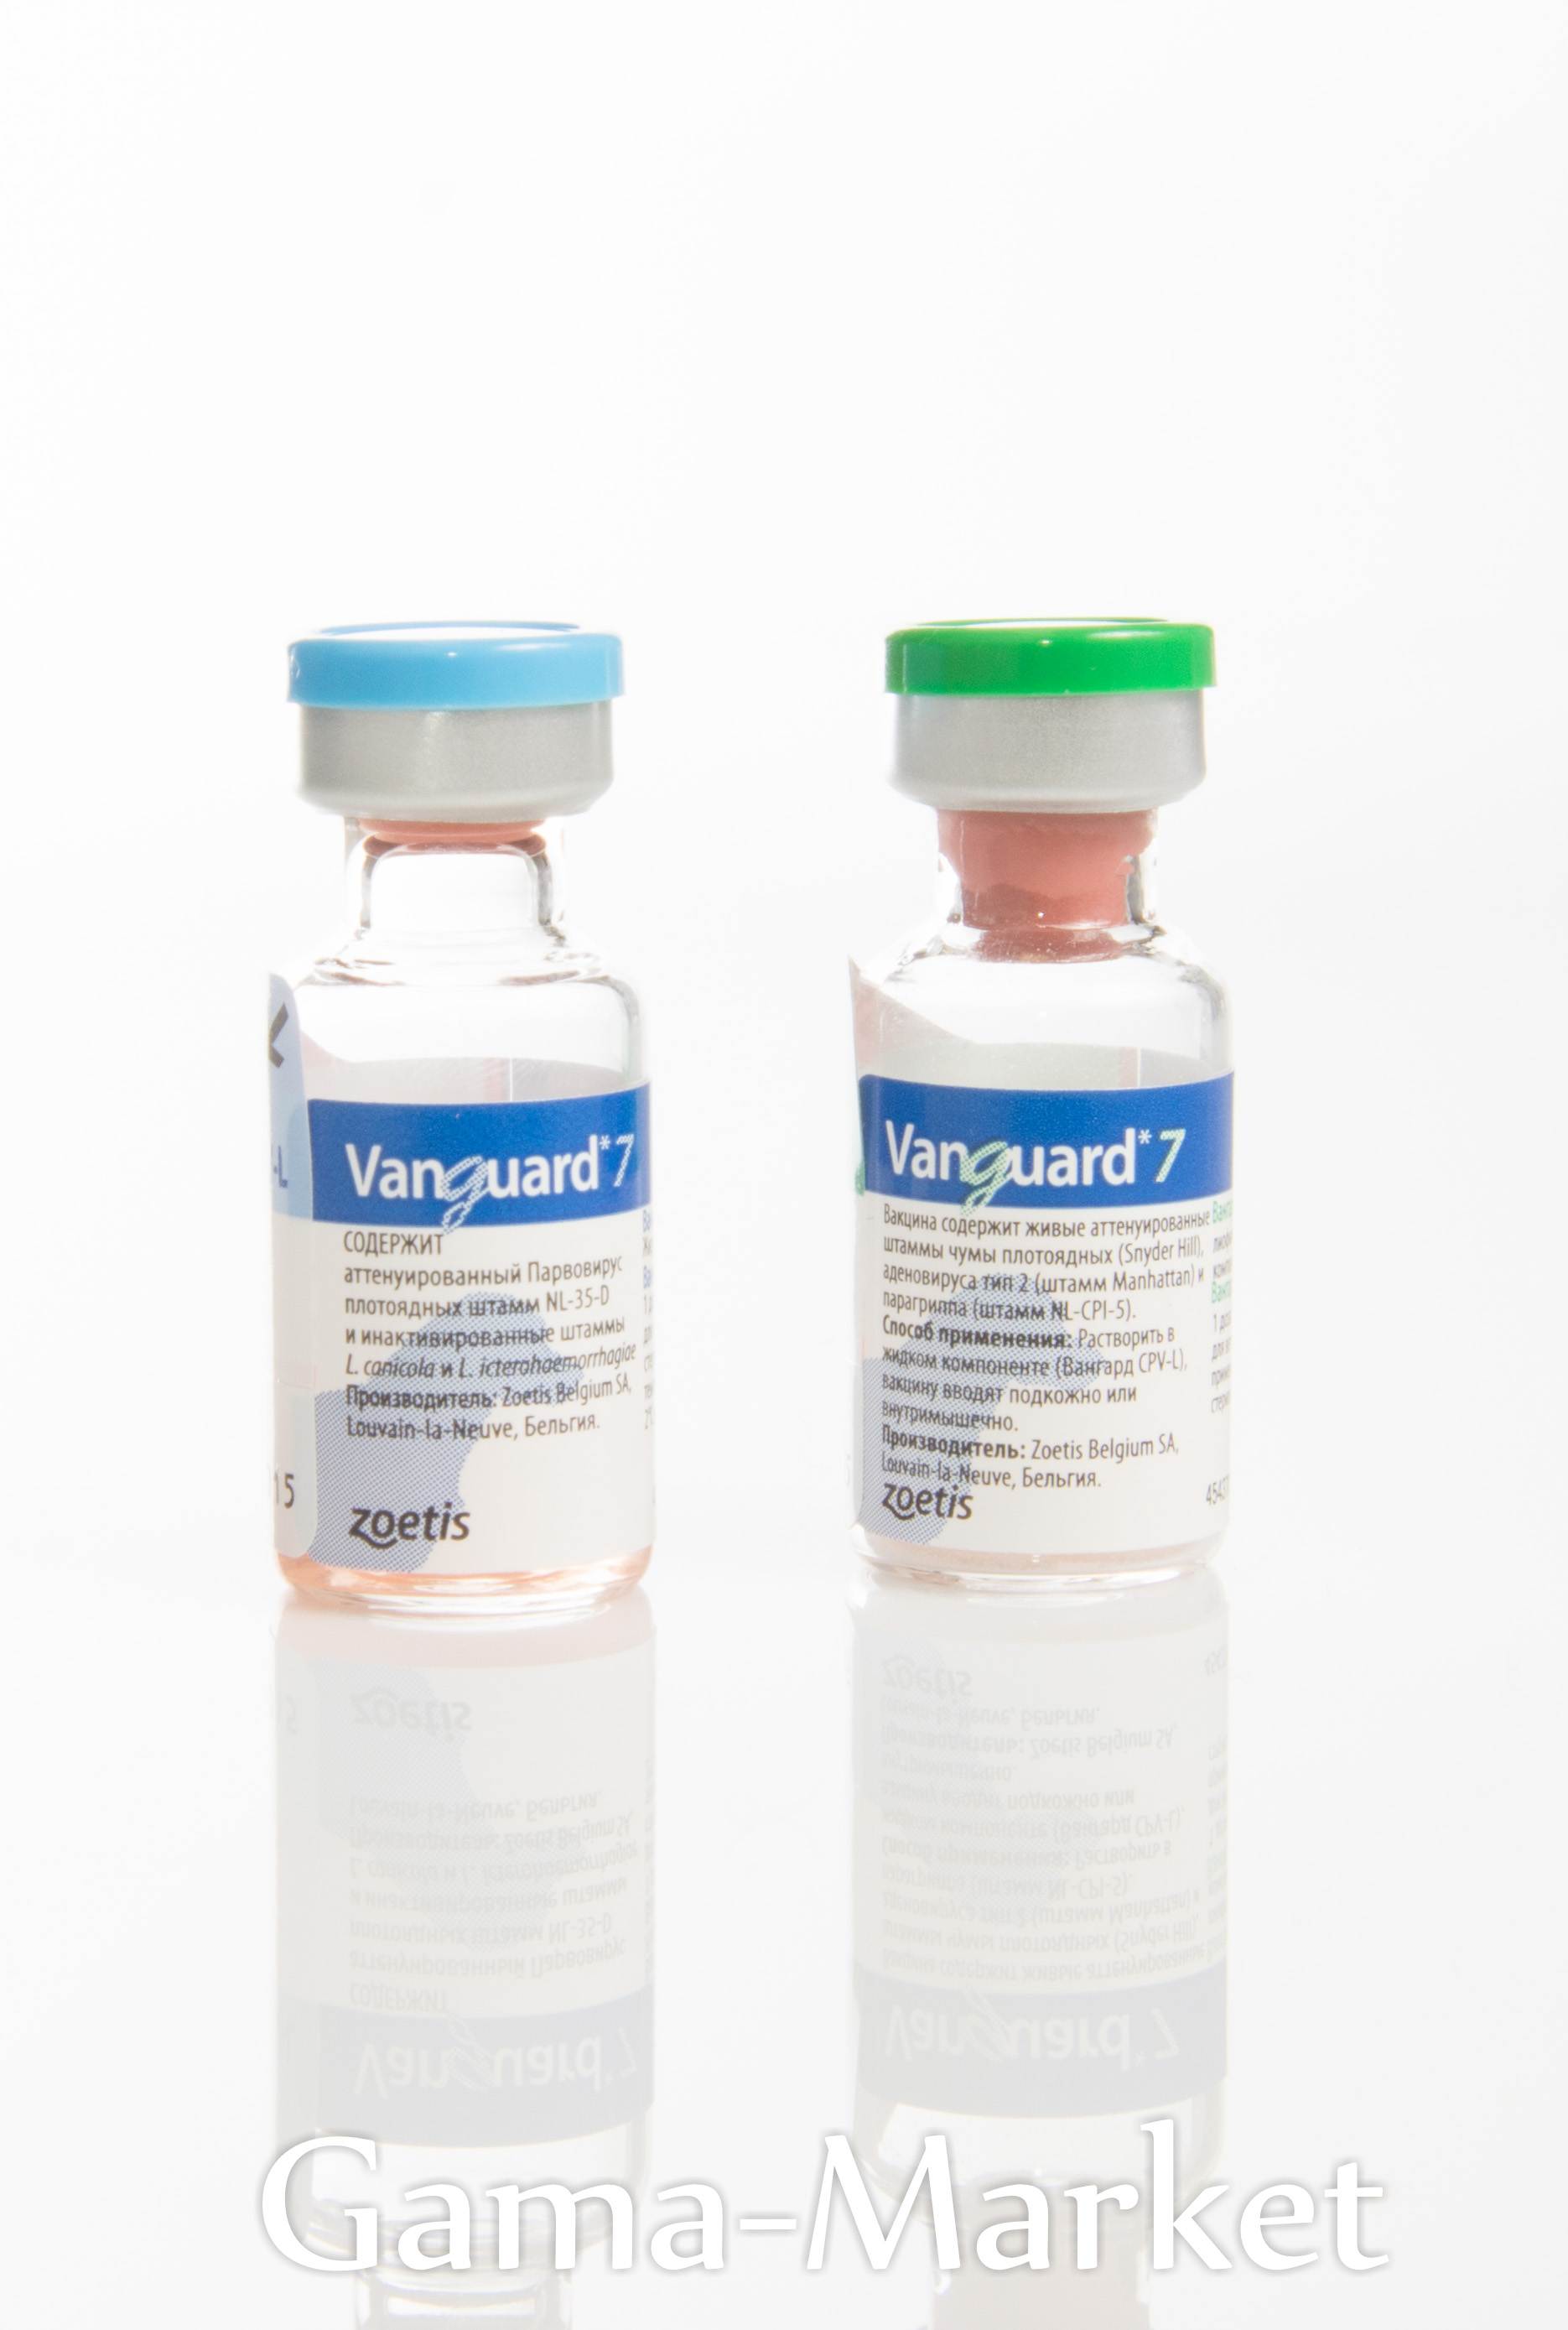 Вакцины вангард 5 и вангард 7: инструкция по применению - вет-препараты